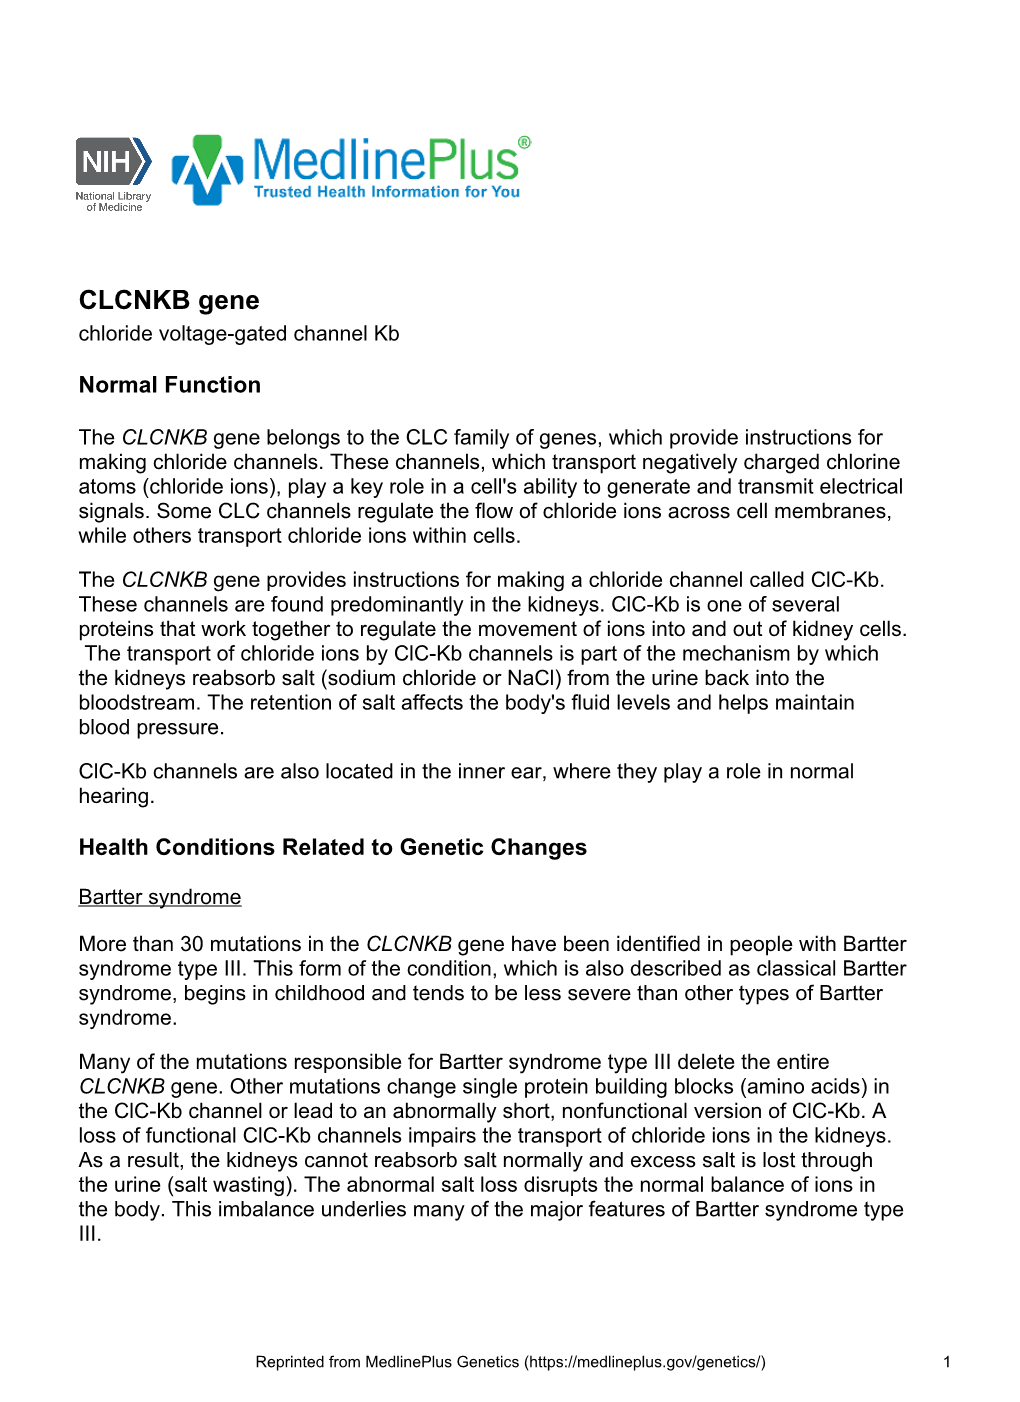 CLCNKB Gene Chloride Voltage-Gated Channel Kb